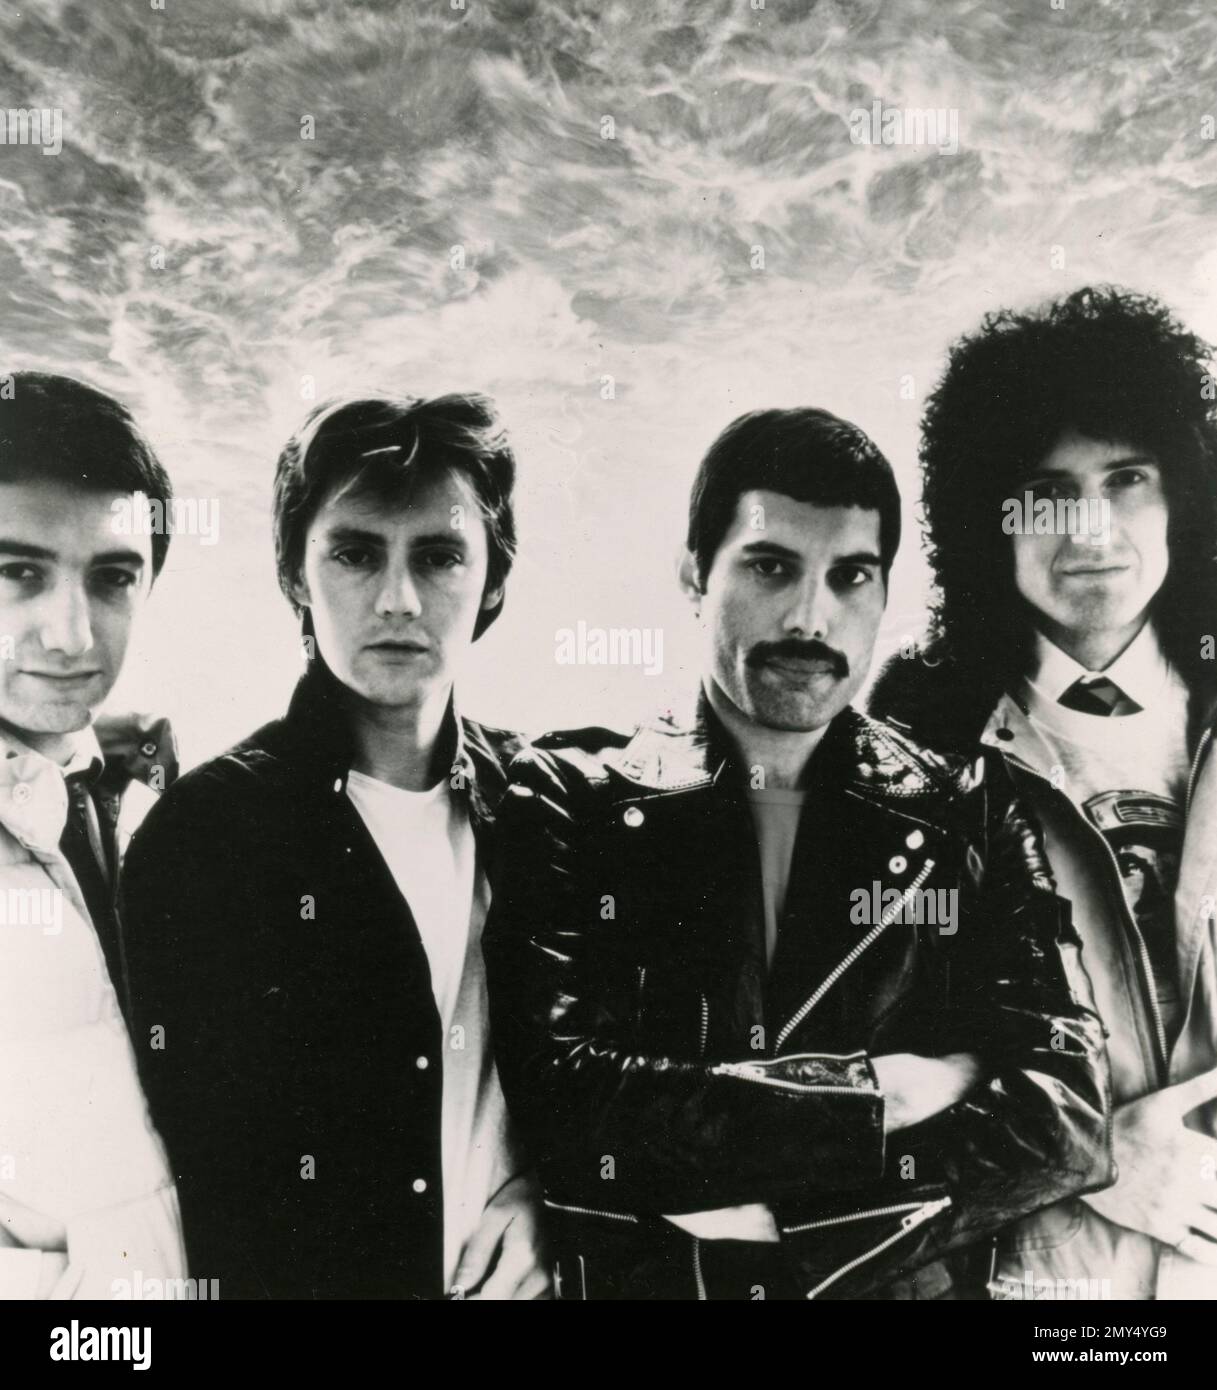 Membri della band pop rock britannica Queen: Da sinistra John Deacon, Roger Taylor, Freddie Mercury e Brian May, UK 1970s Foto Stock